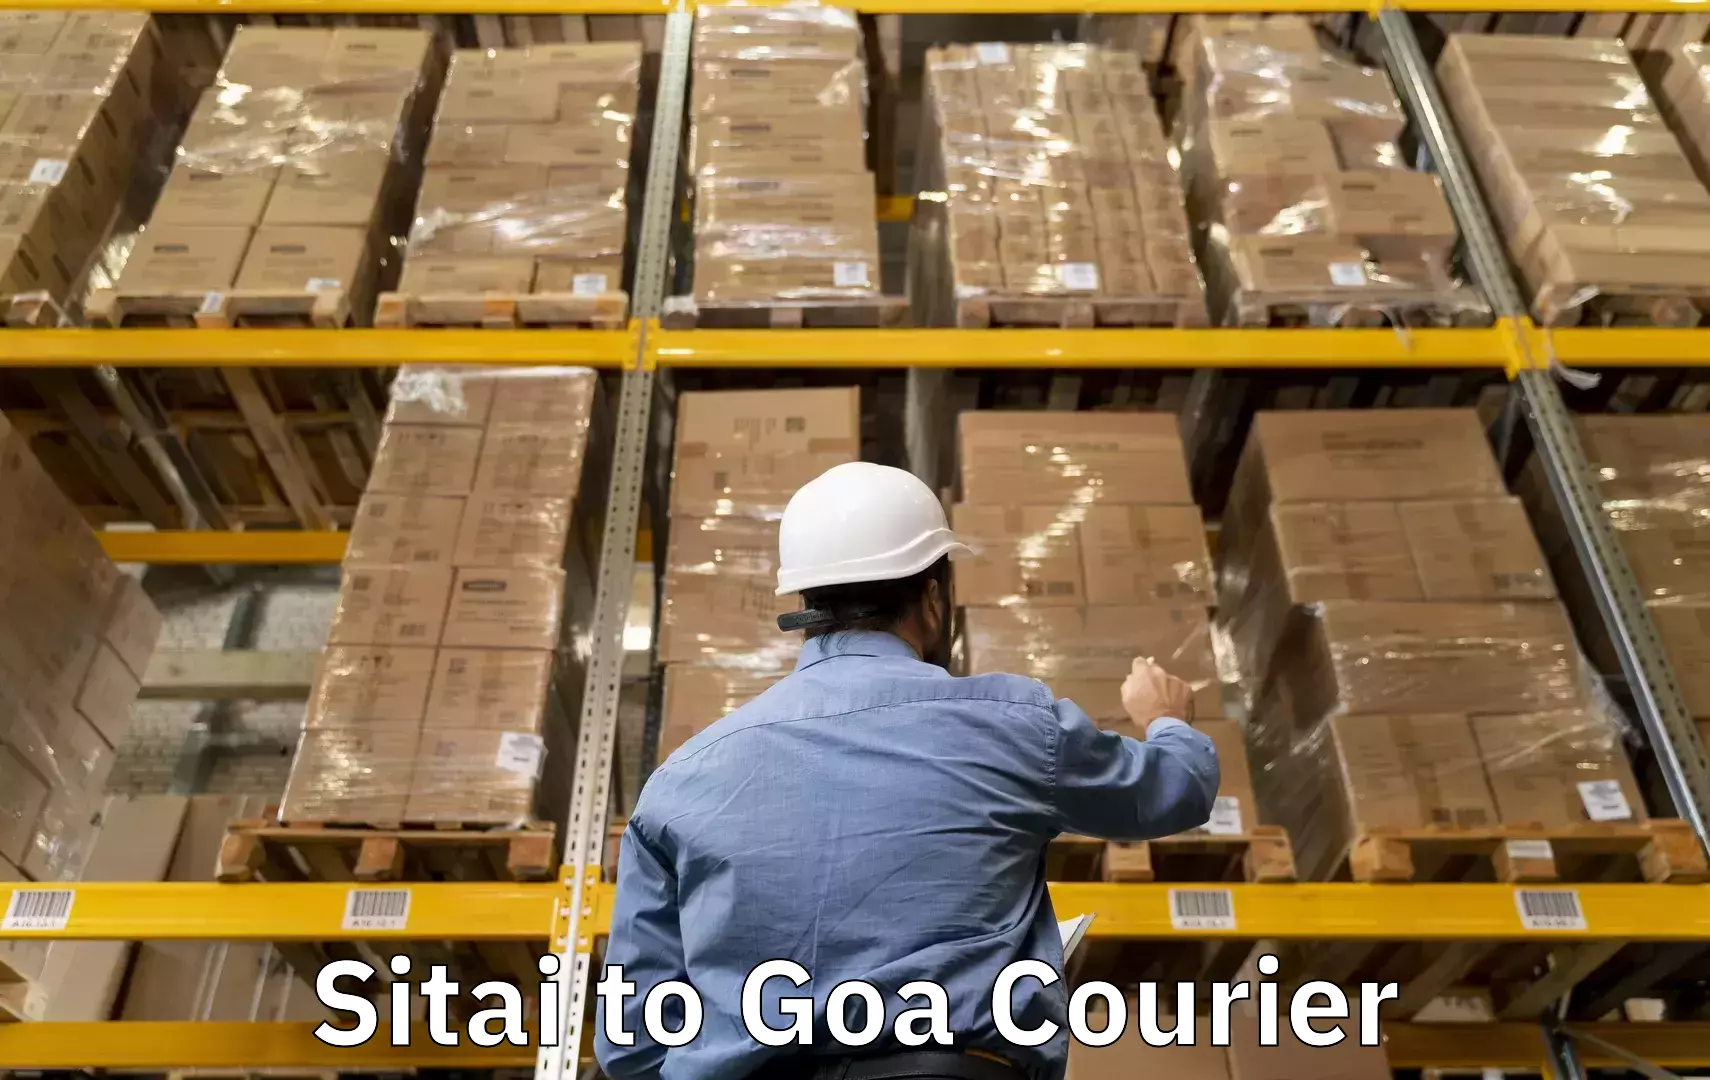 Same day luggage service Sitai to Goa